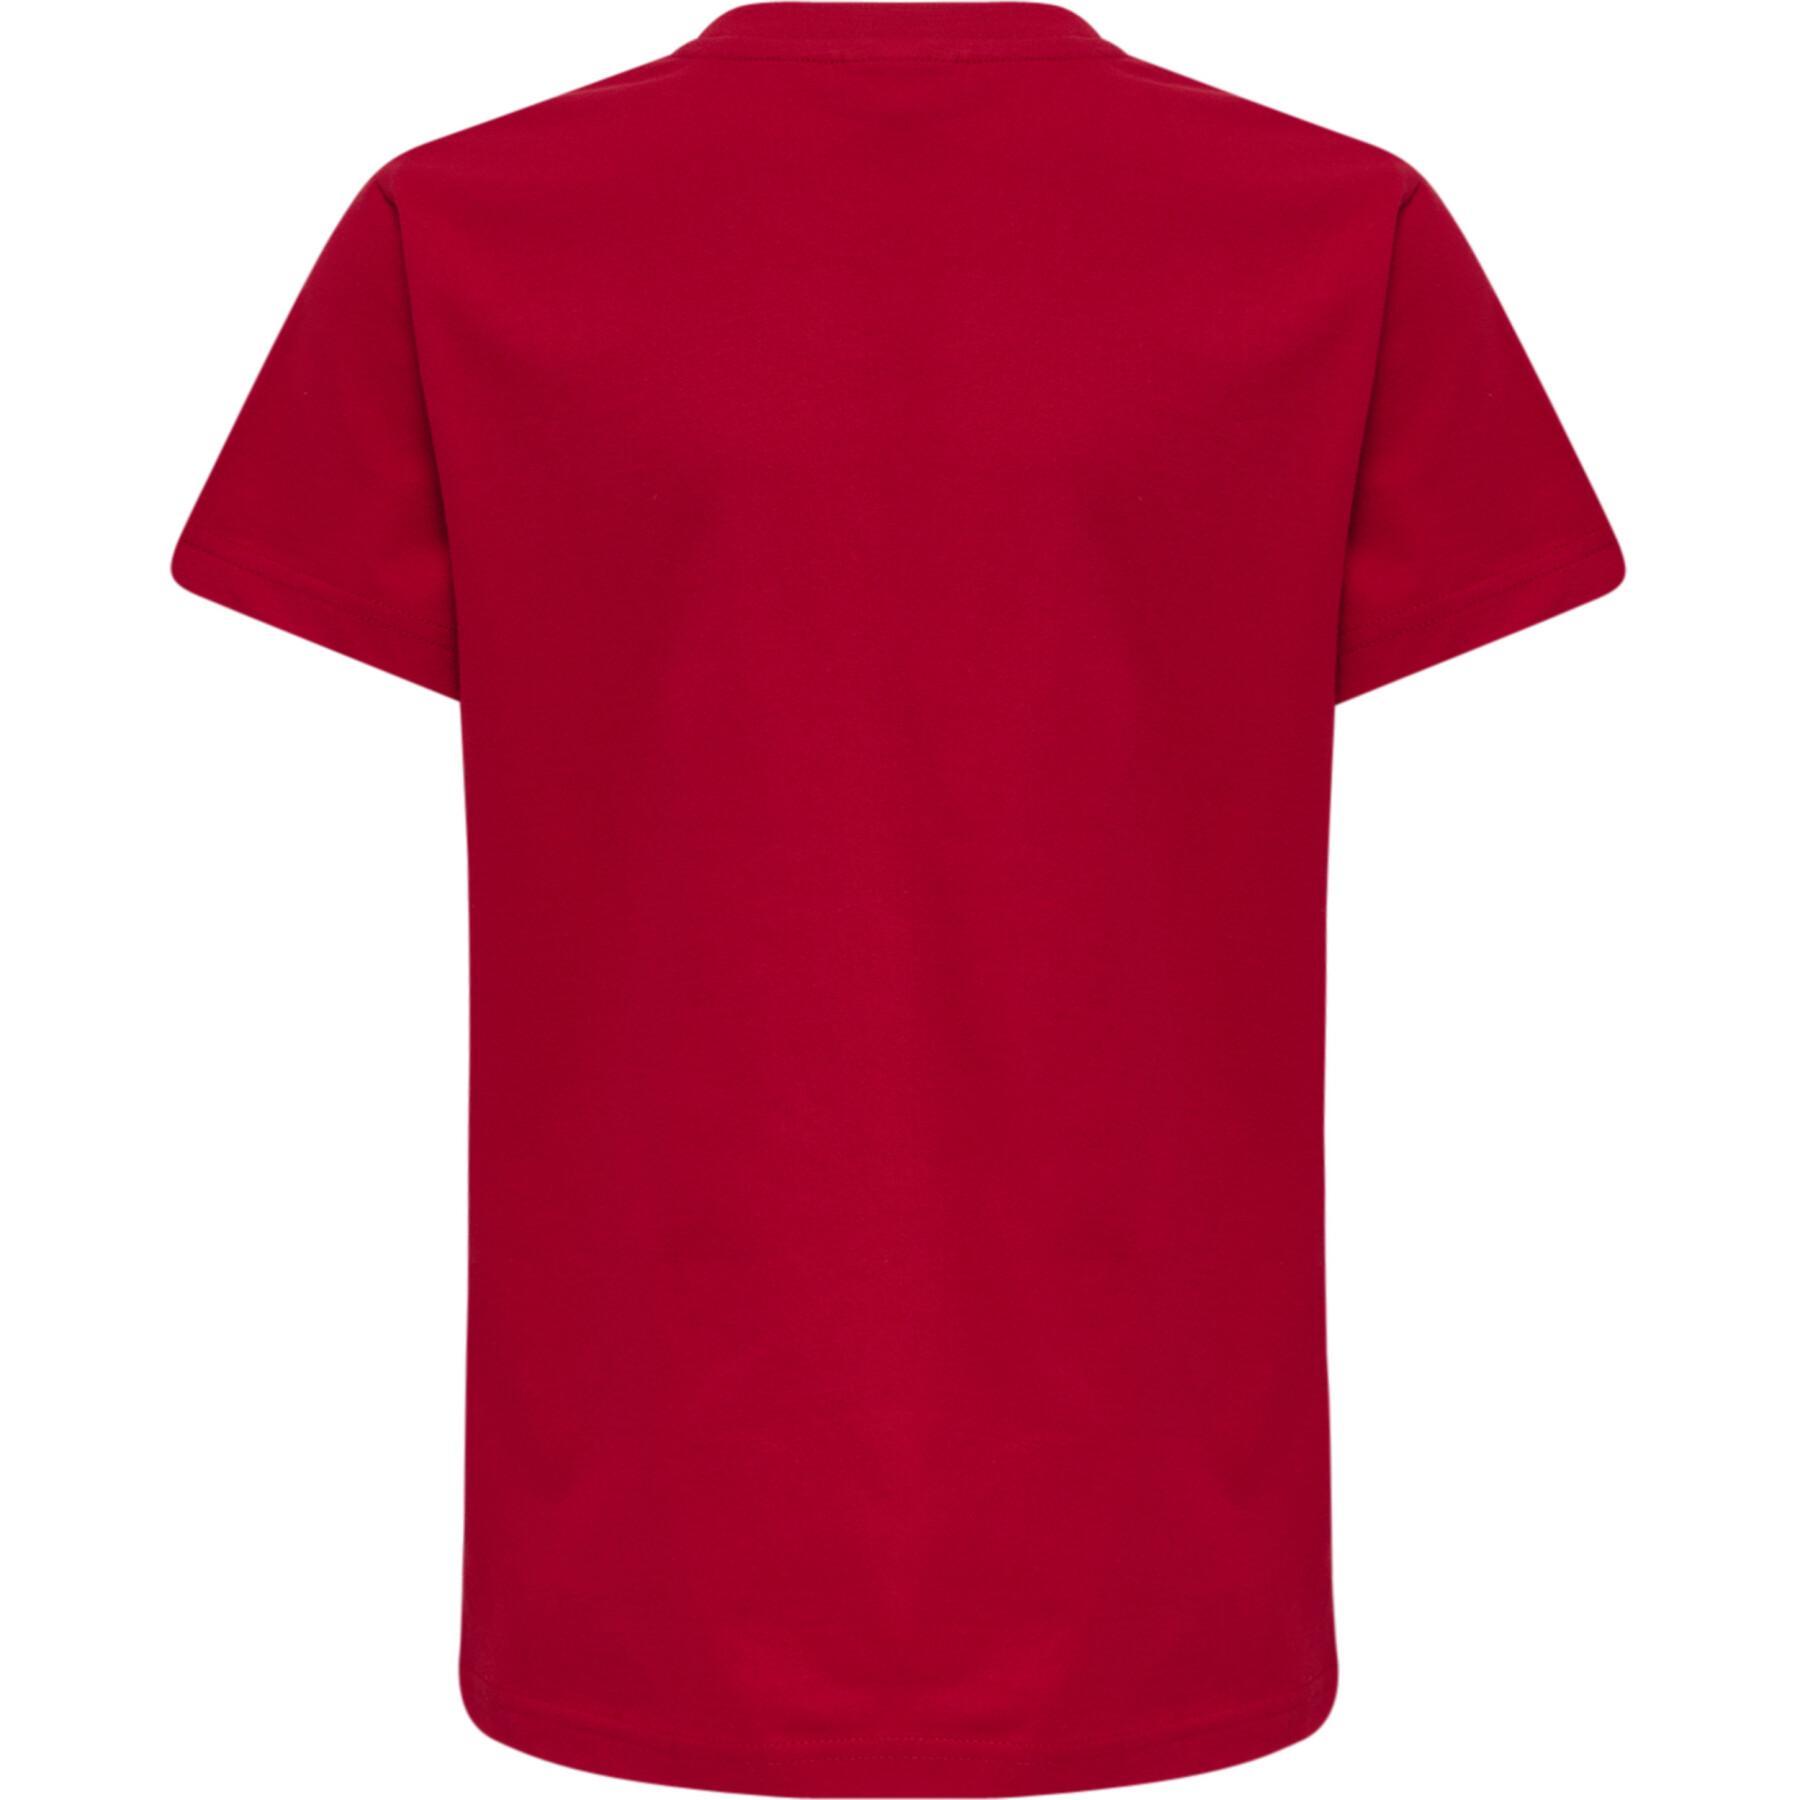 Kinder-T-shirt Hummel Red Basic